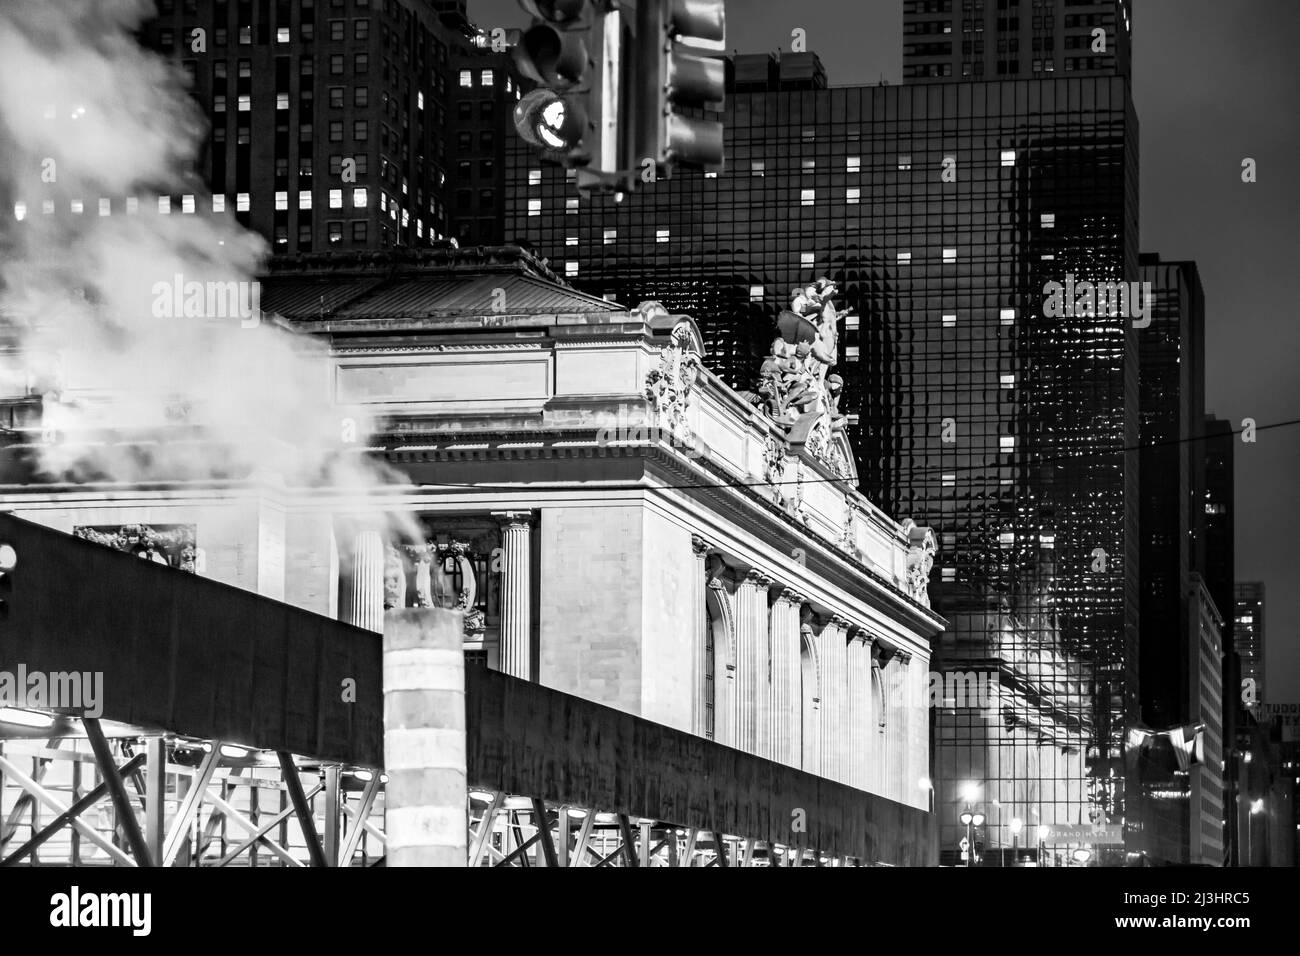 Grand Central terminal, New York City, NY, USA, vue sur la rue typique de New York avec l'évent de vapeur à rayures orange blanc au milieu de la rue. Banque D'Images